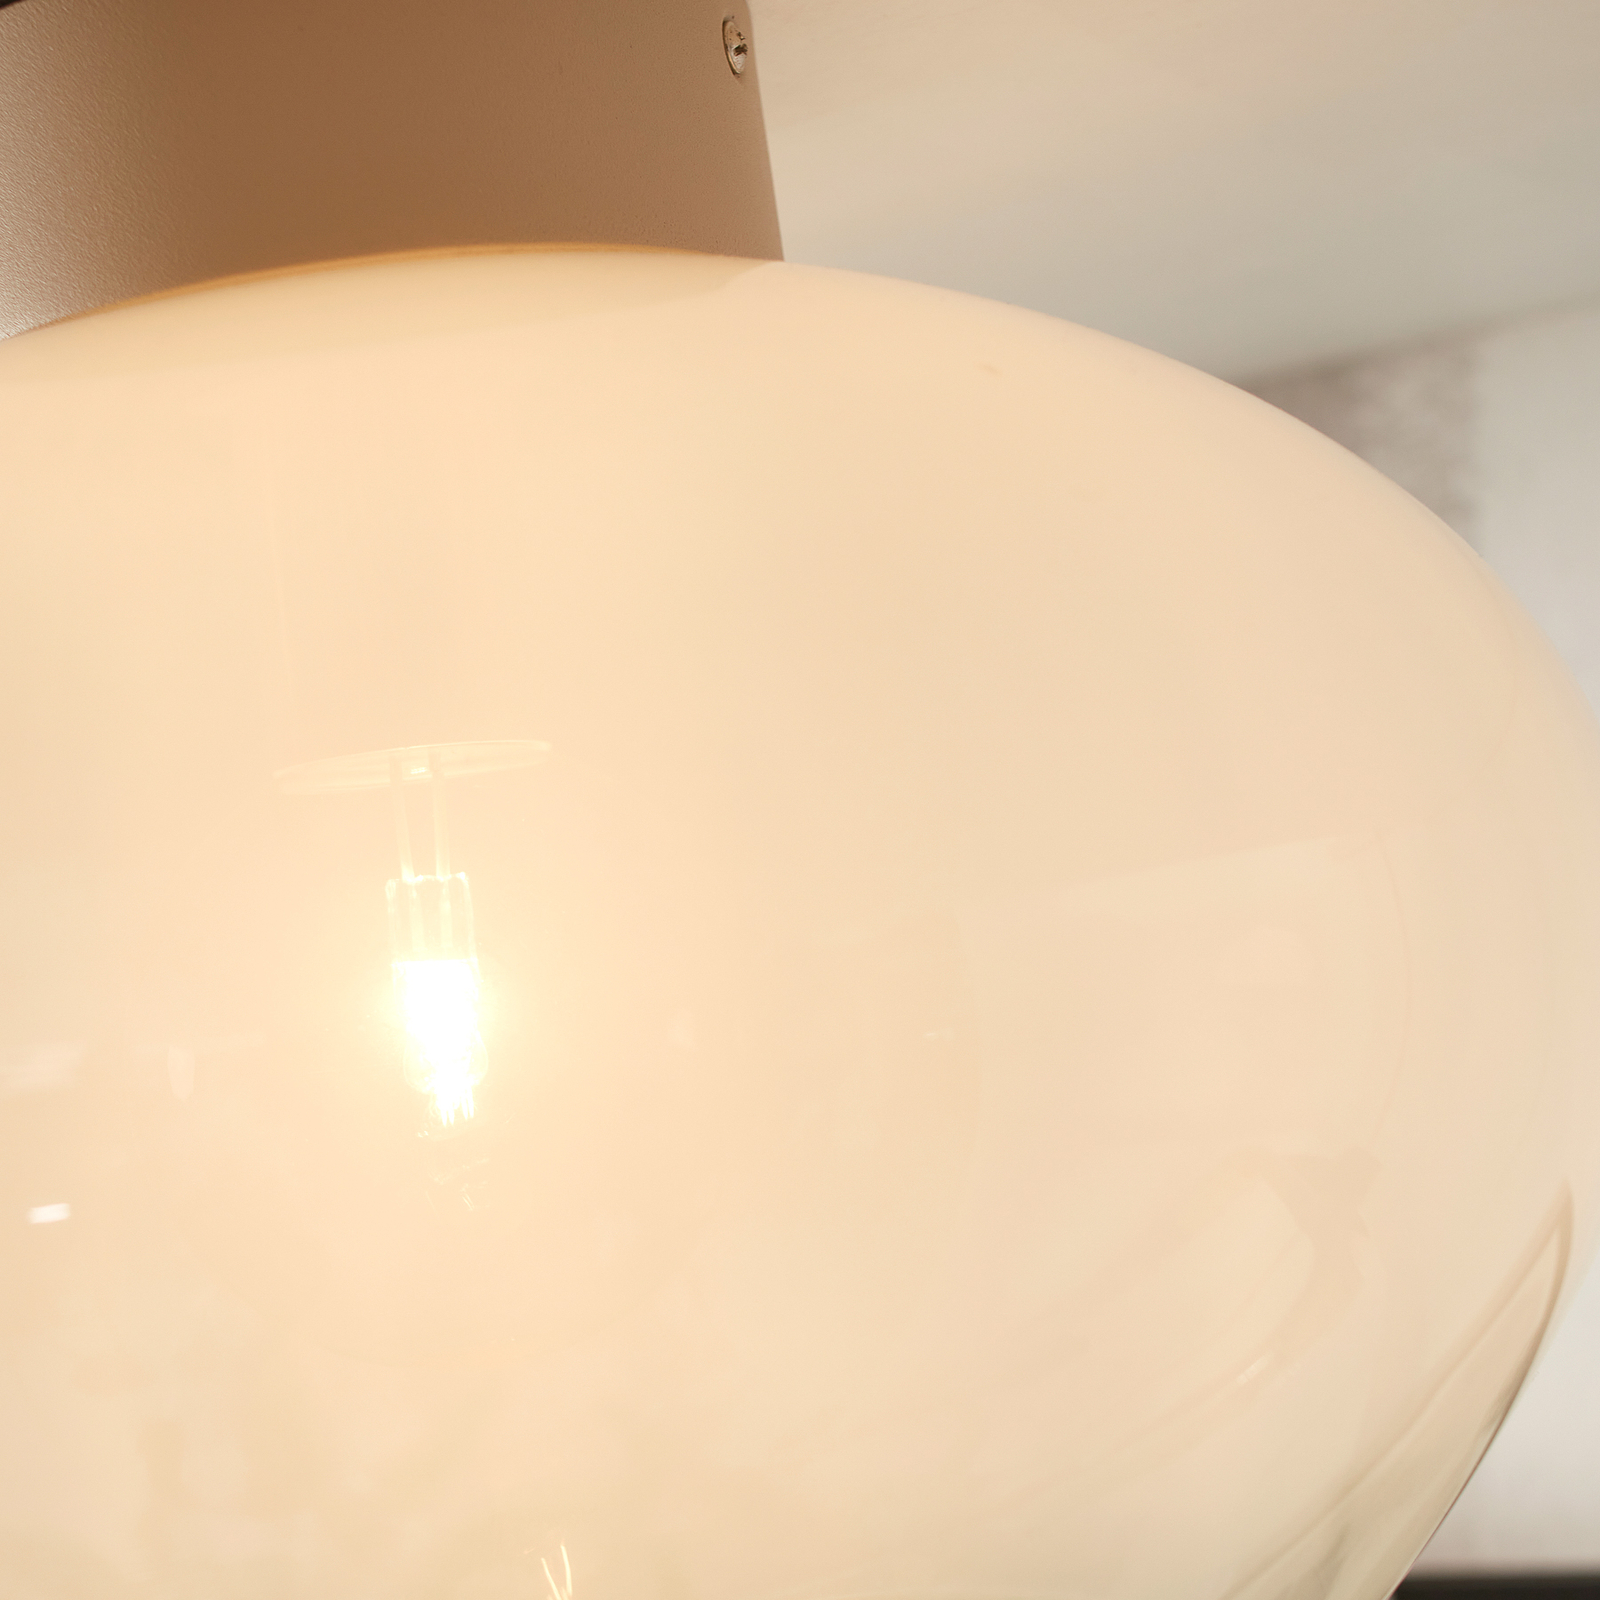 Jedná se o stropní svítidlo RoMi Bologna, mléčně bílé